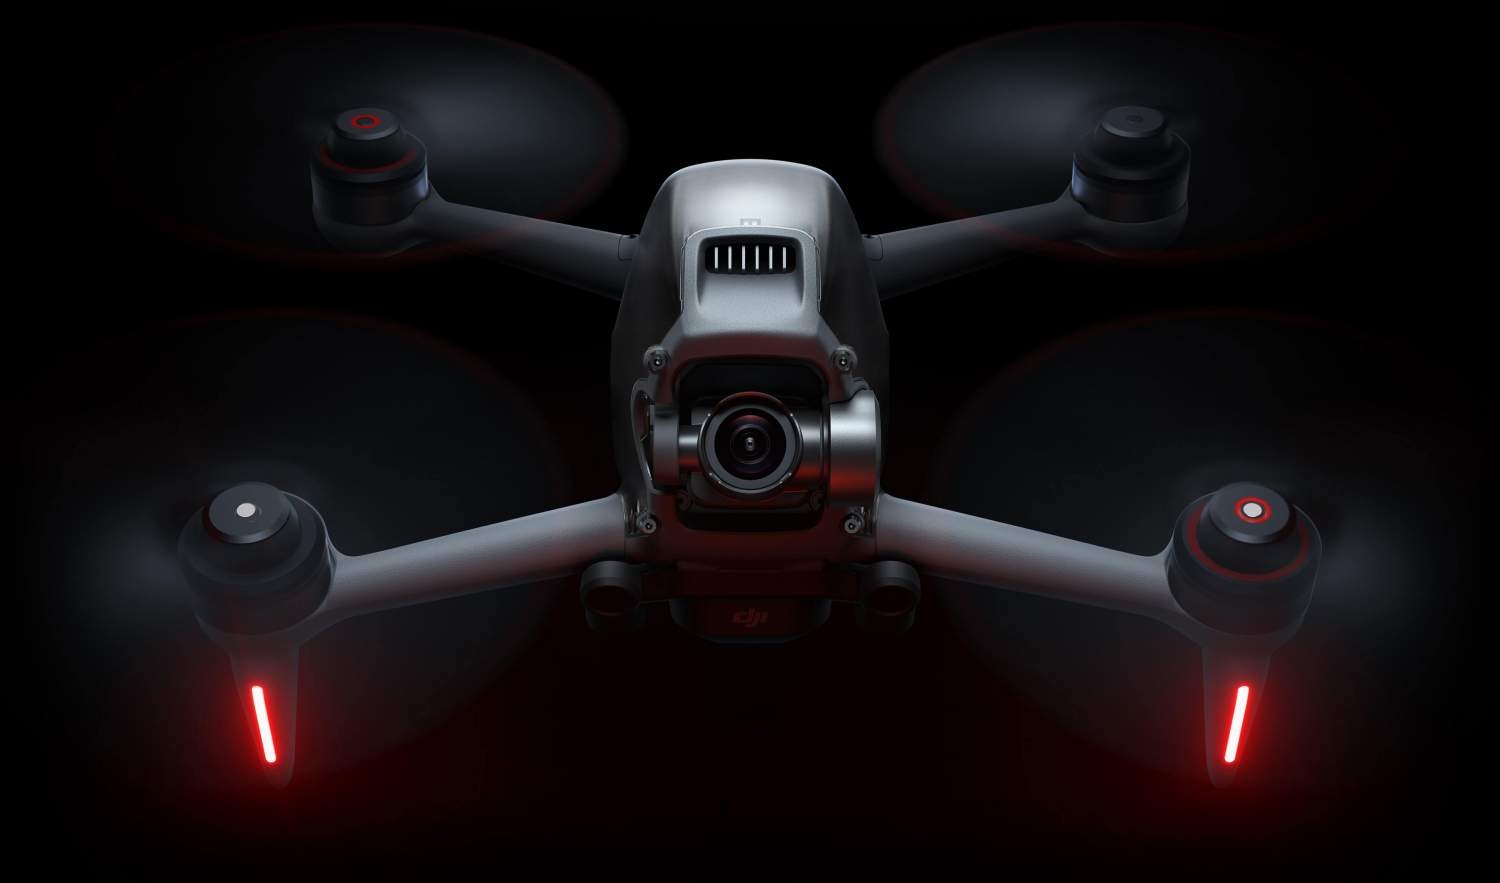 DJI FPV 4K kayıt yetenekli ve profesyonel drone pilotlarına özel